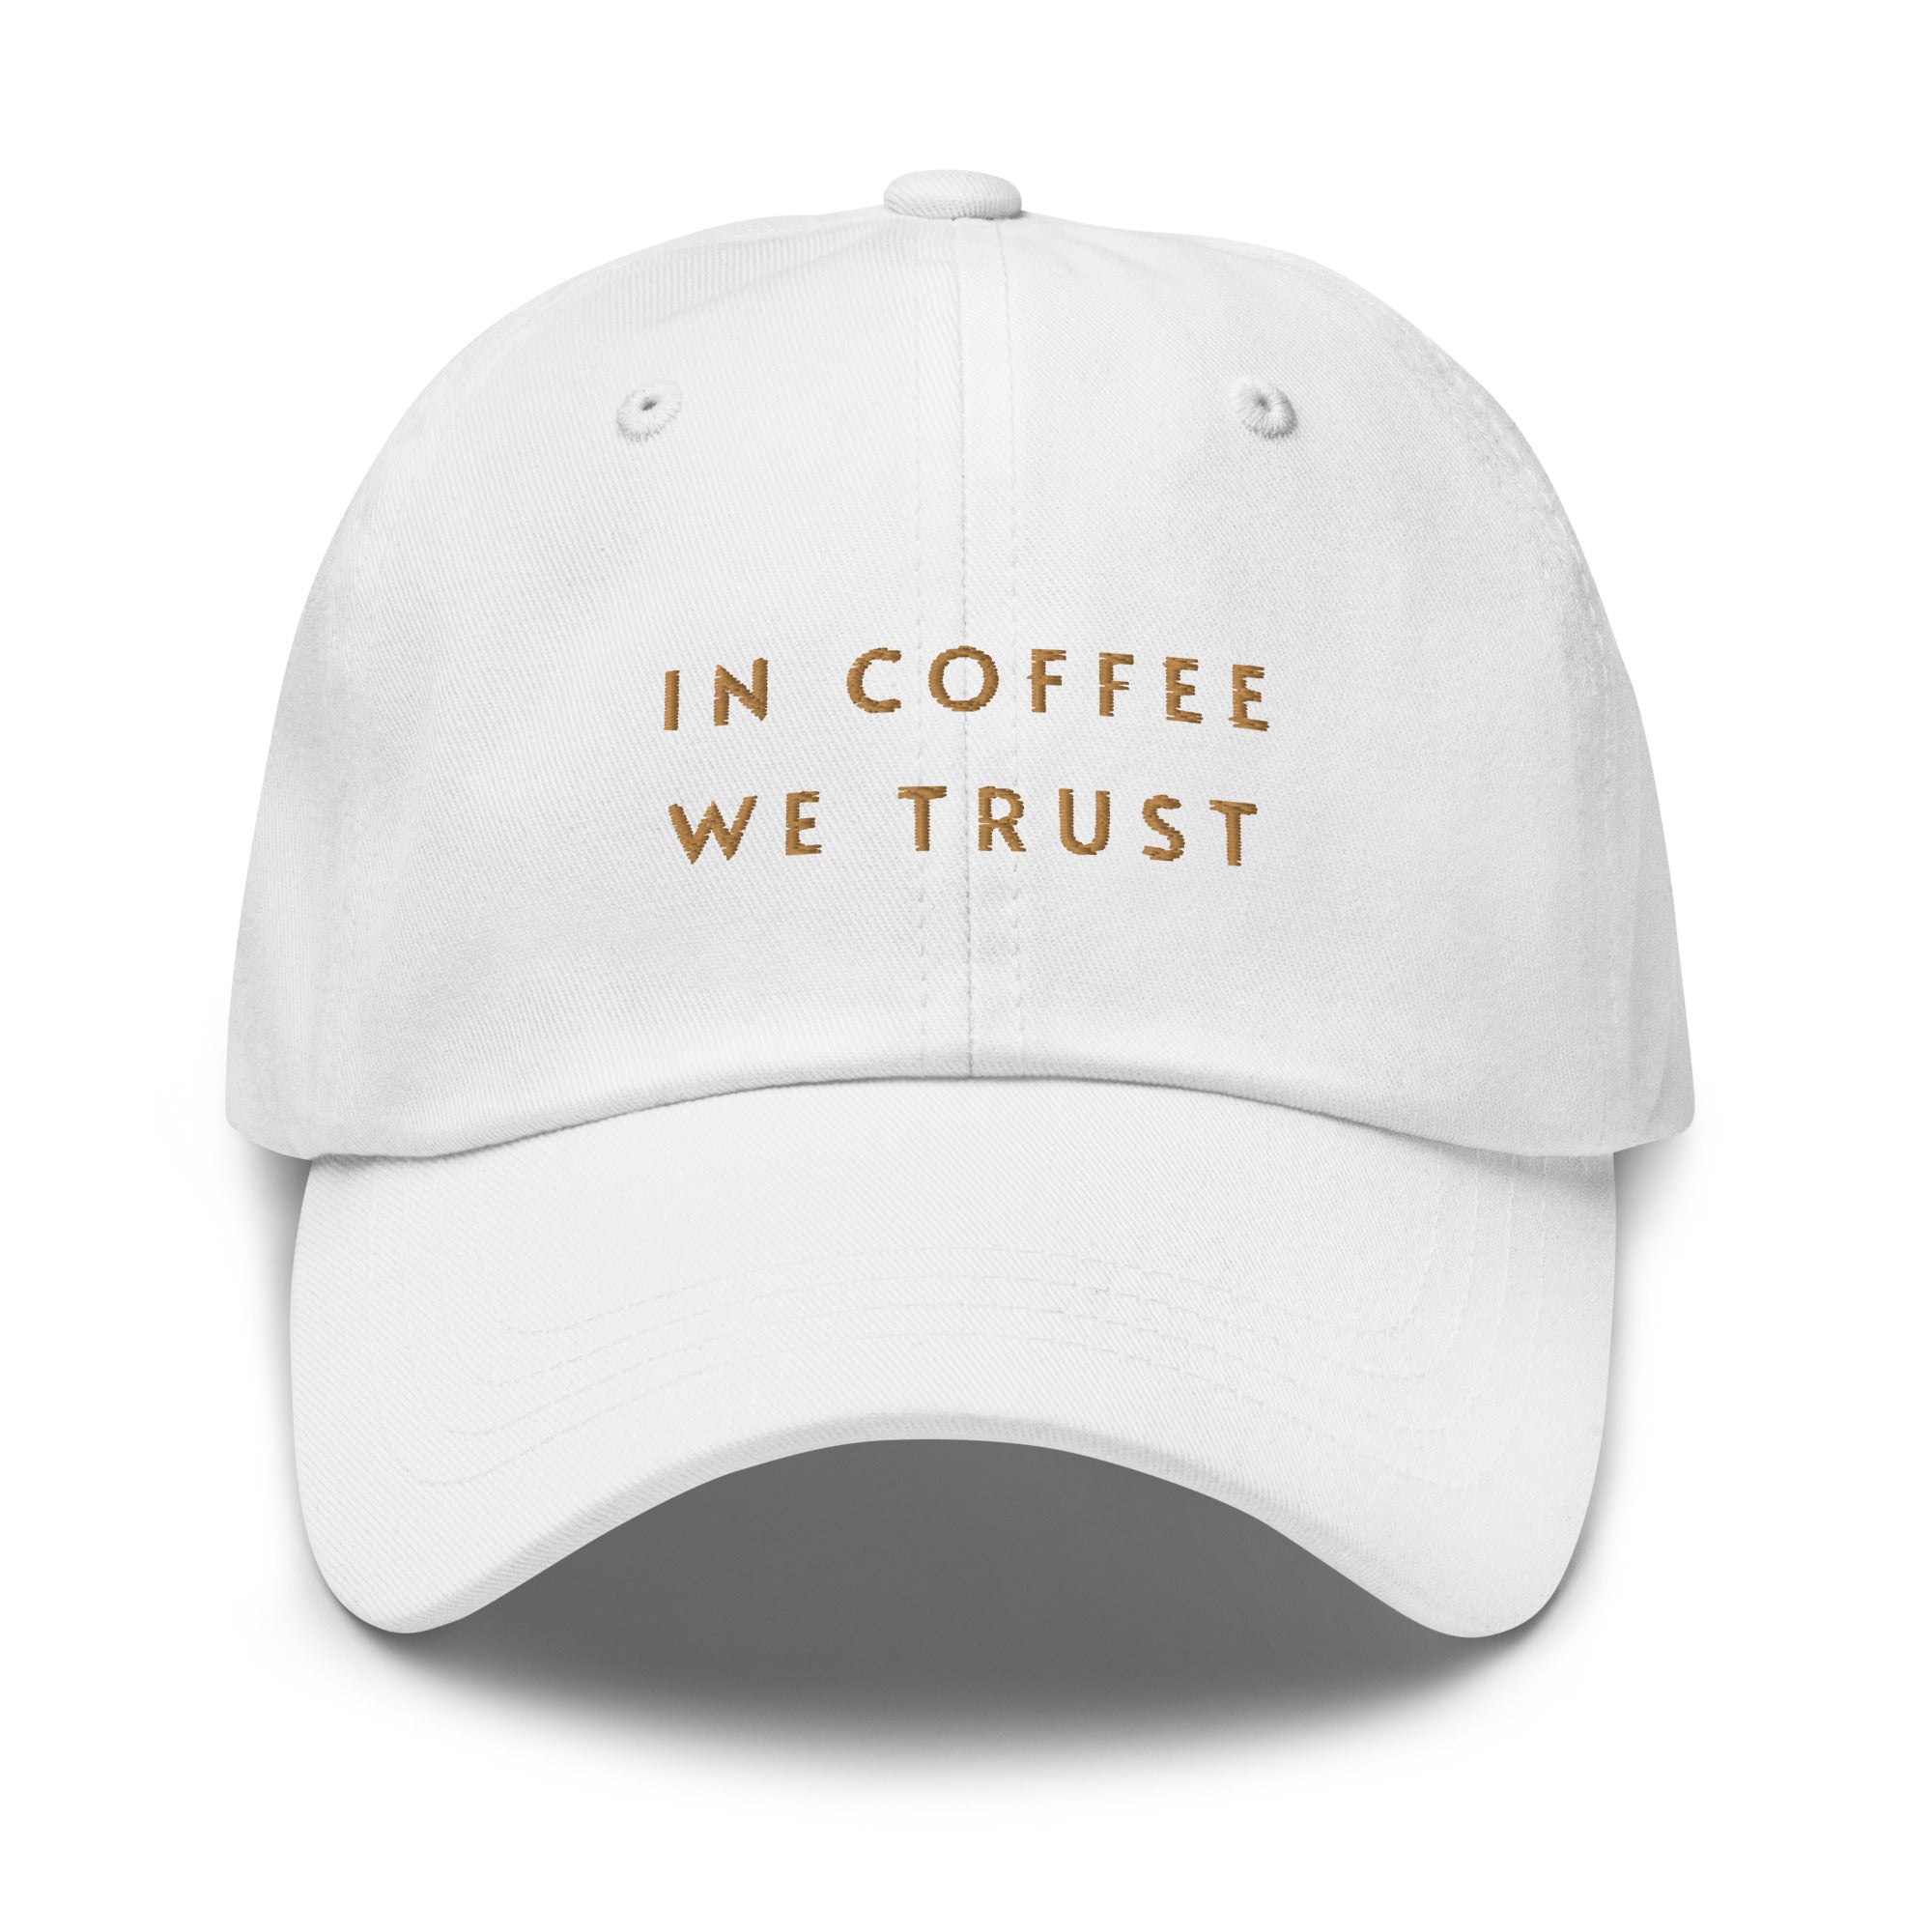 In coffee we trust Cap